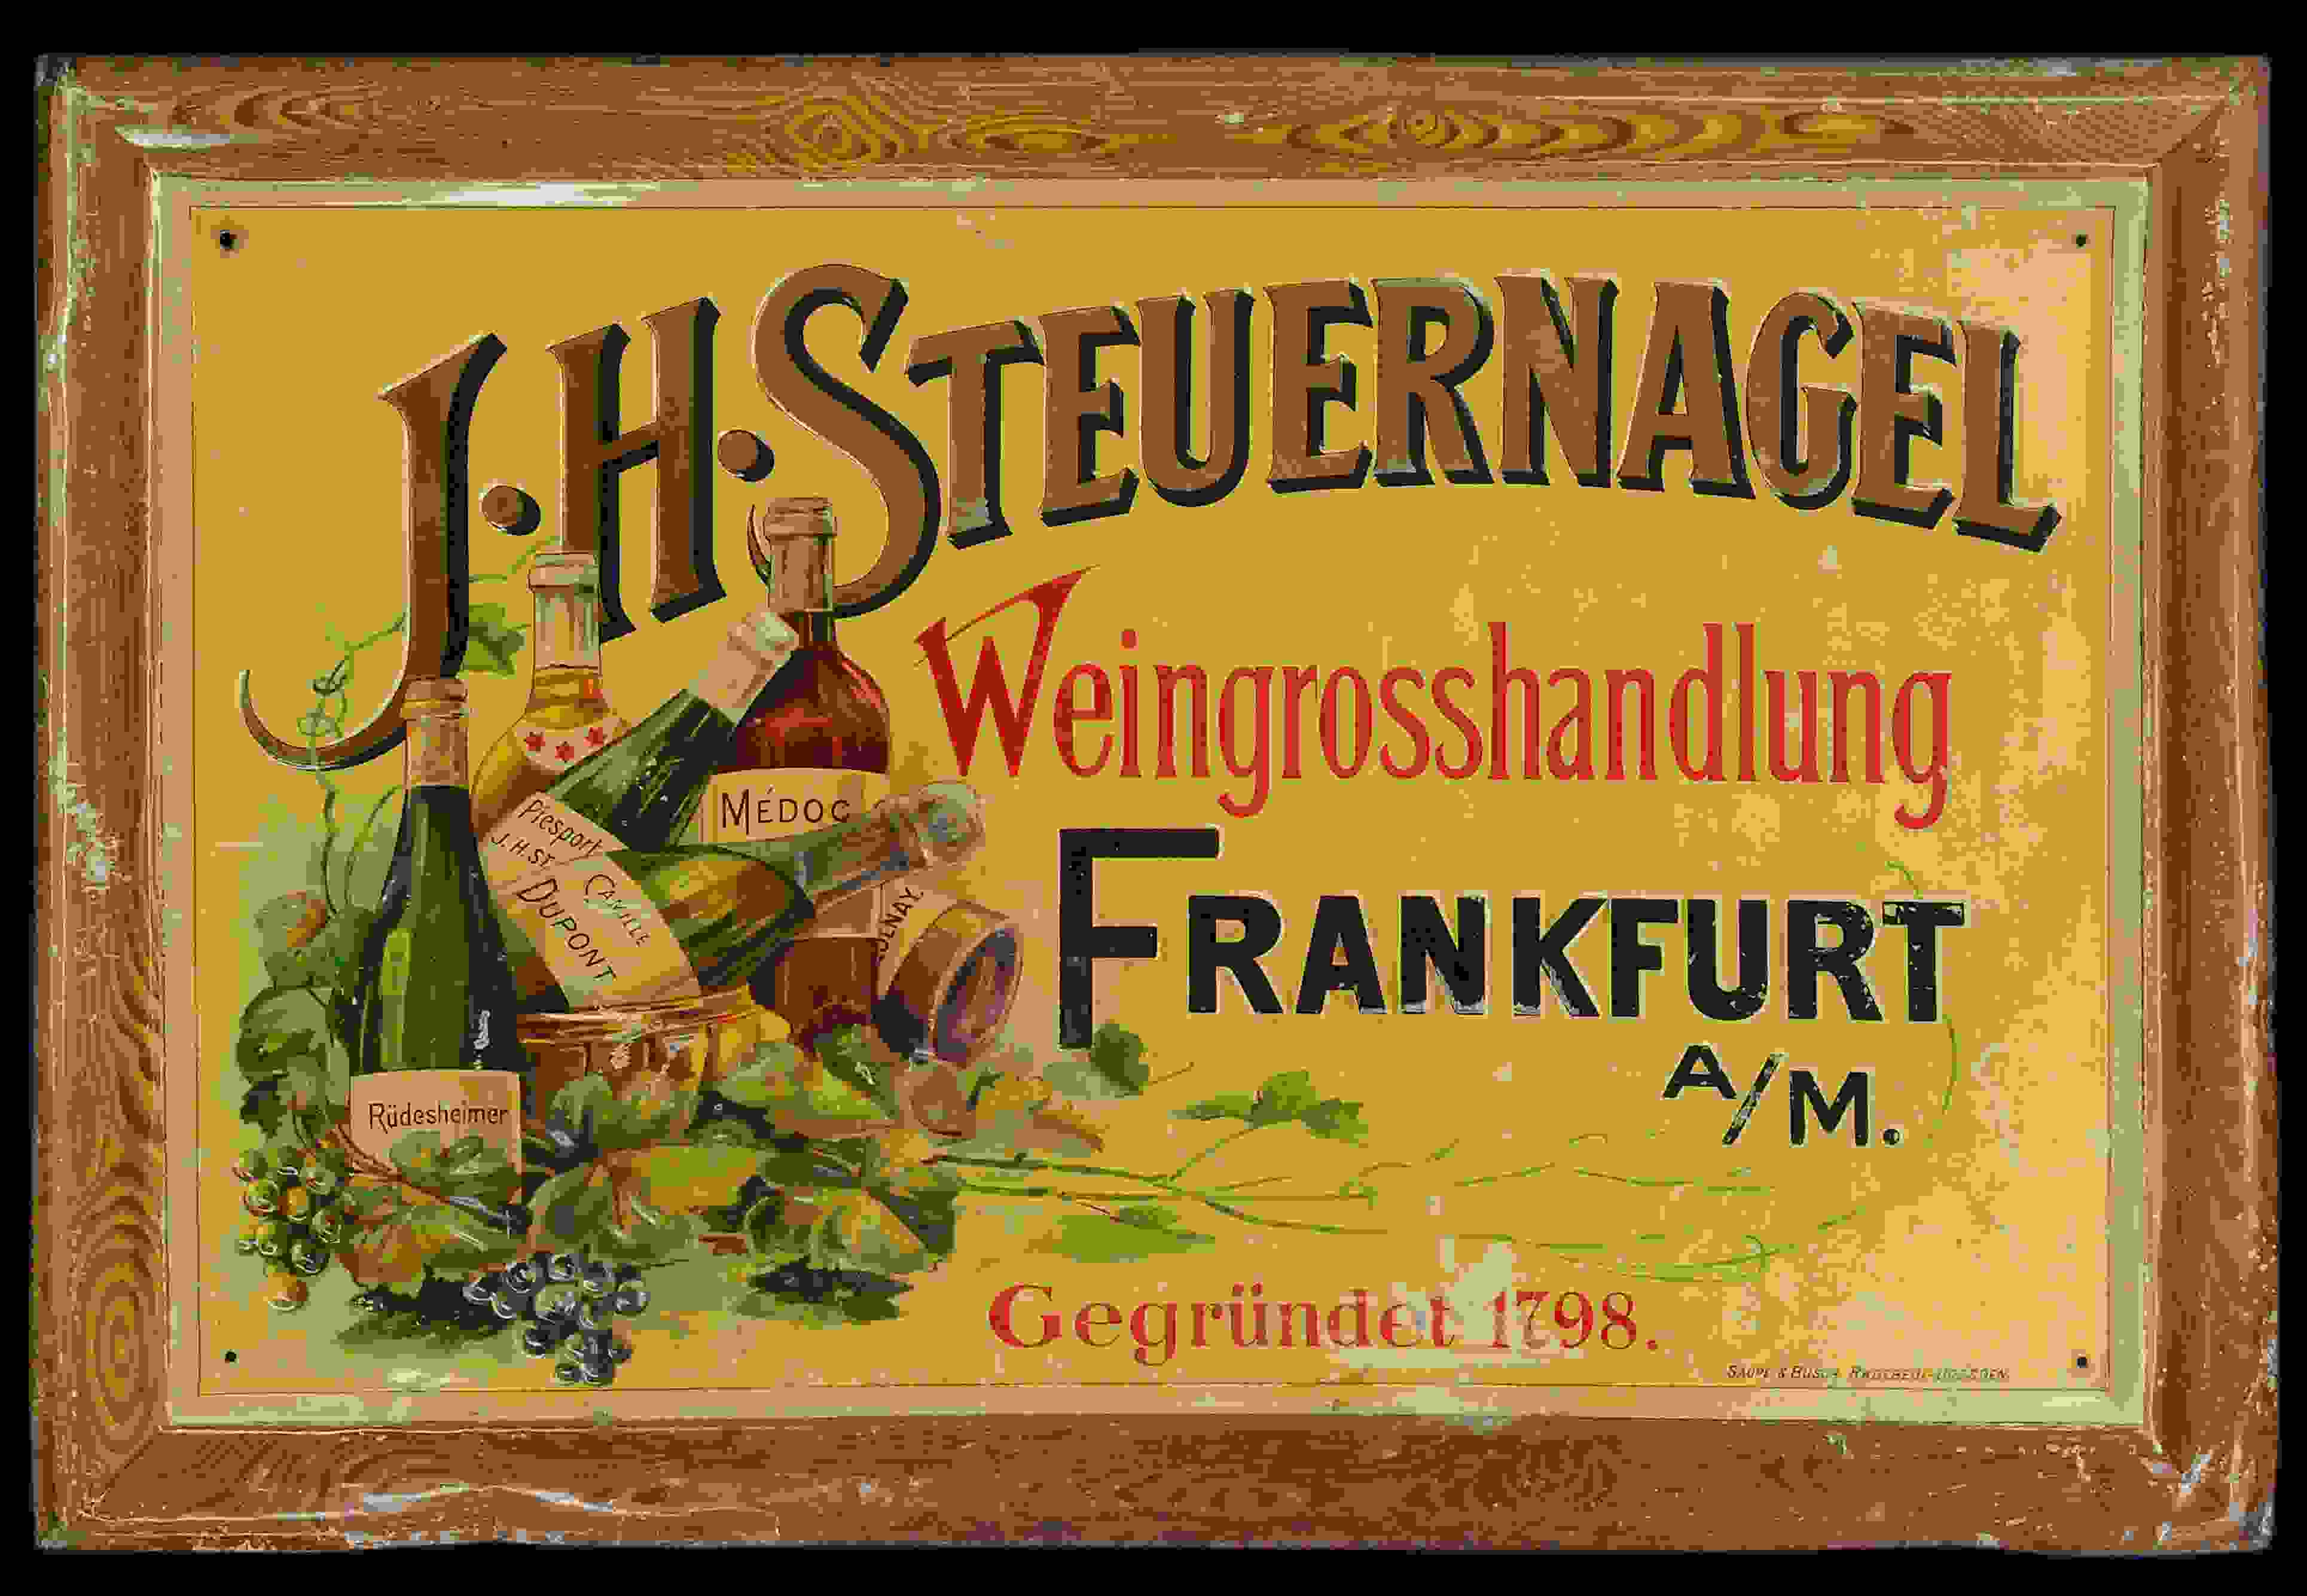 J. H. Steuernagel Weingrosshandlung 